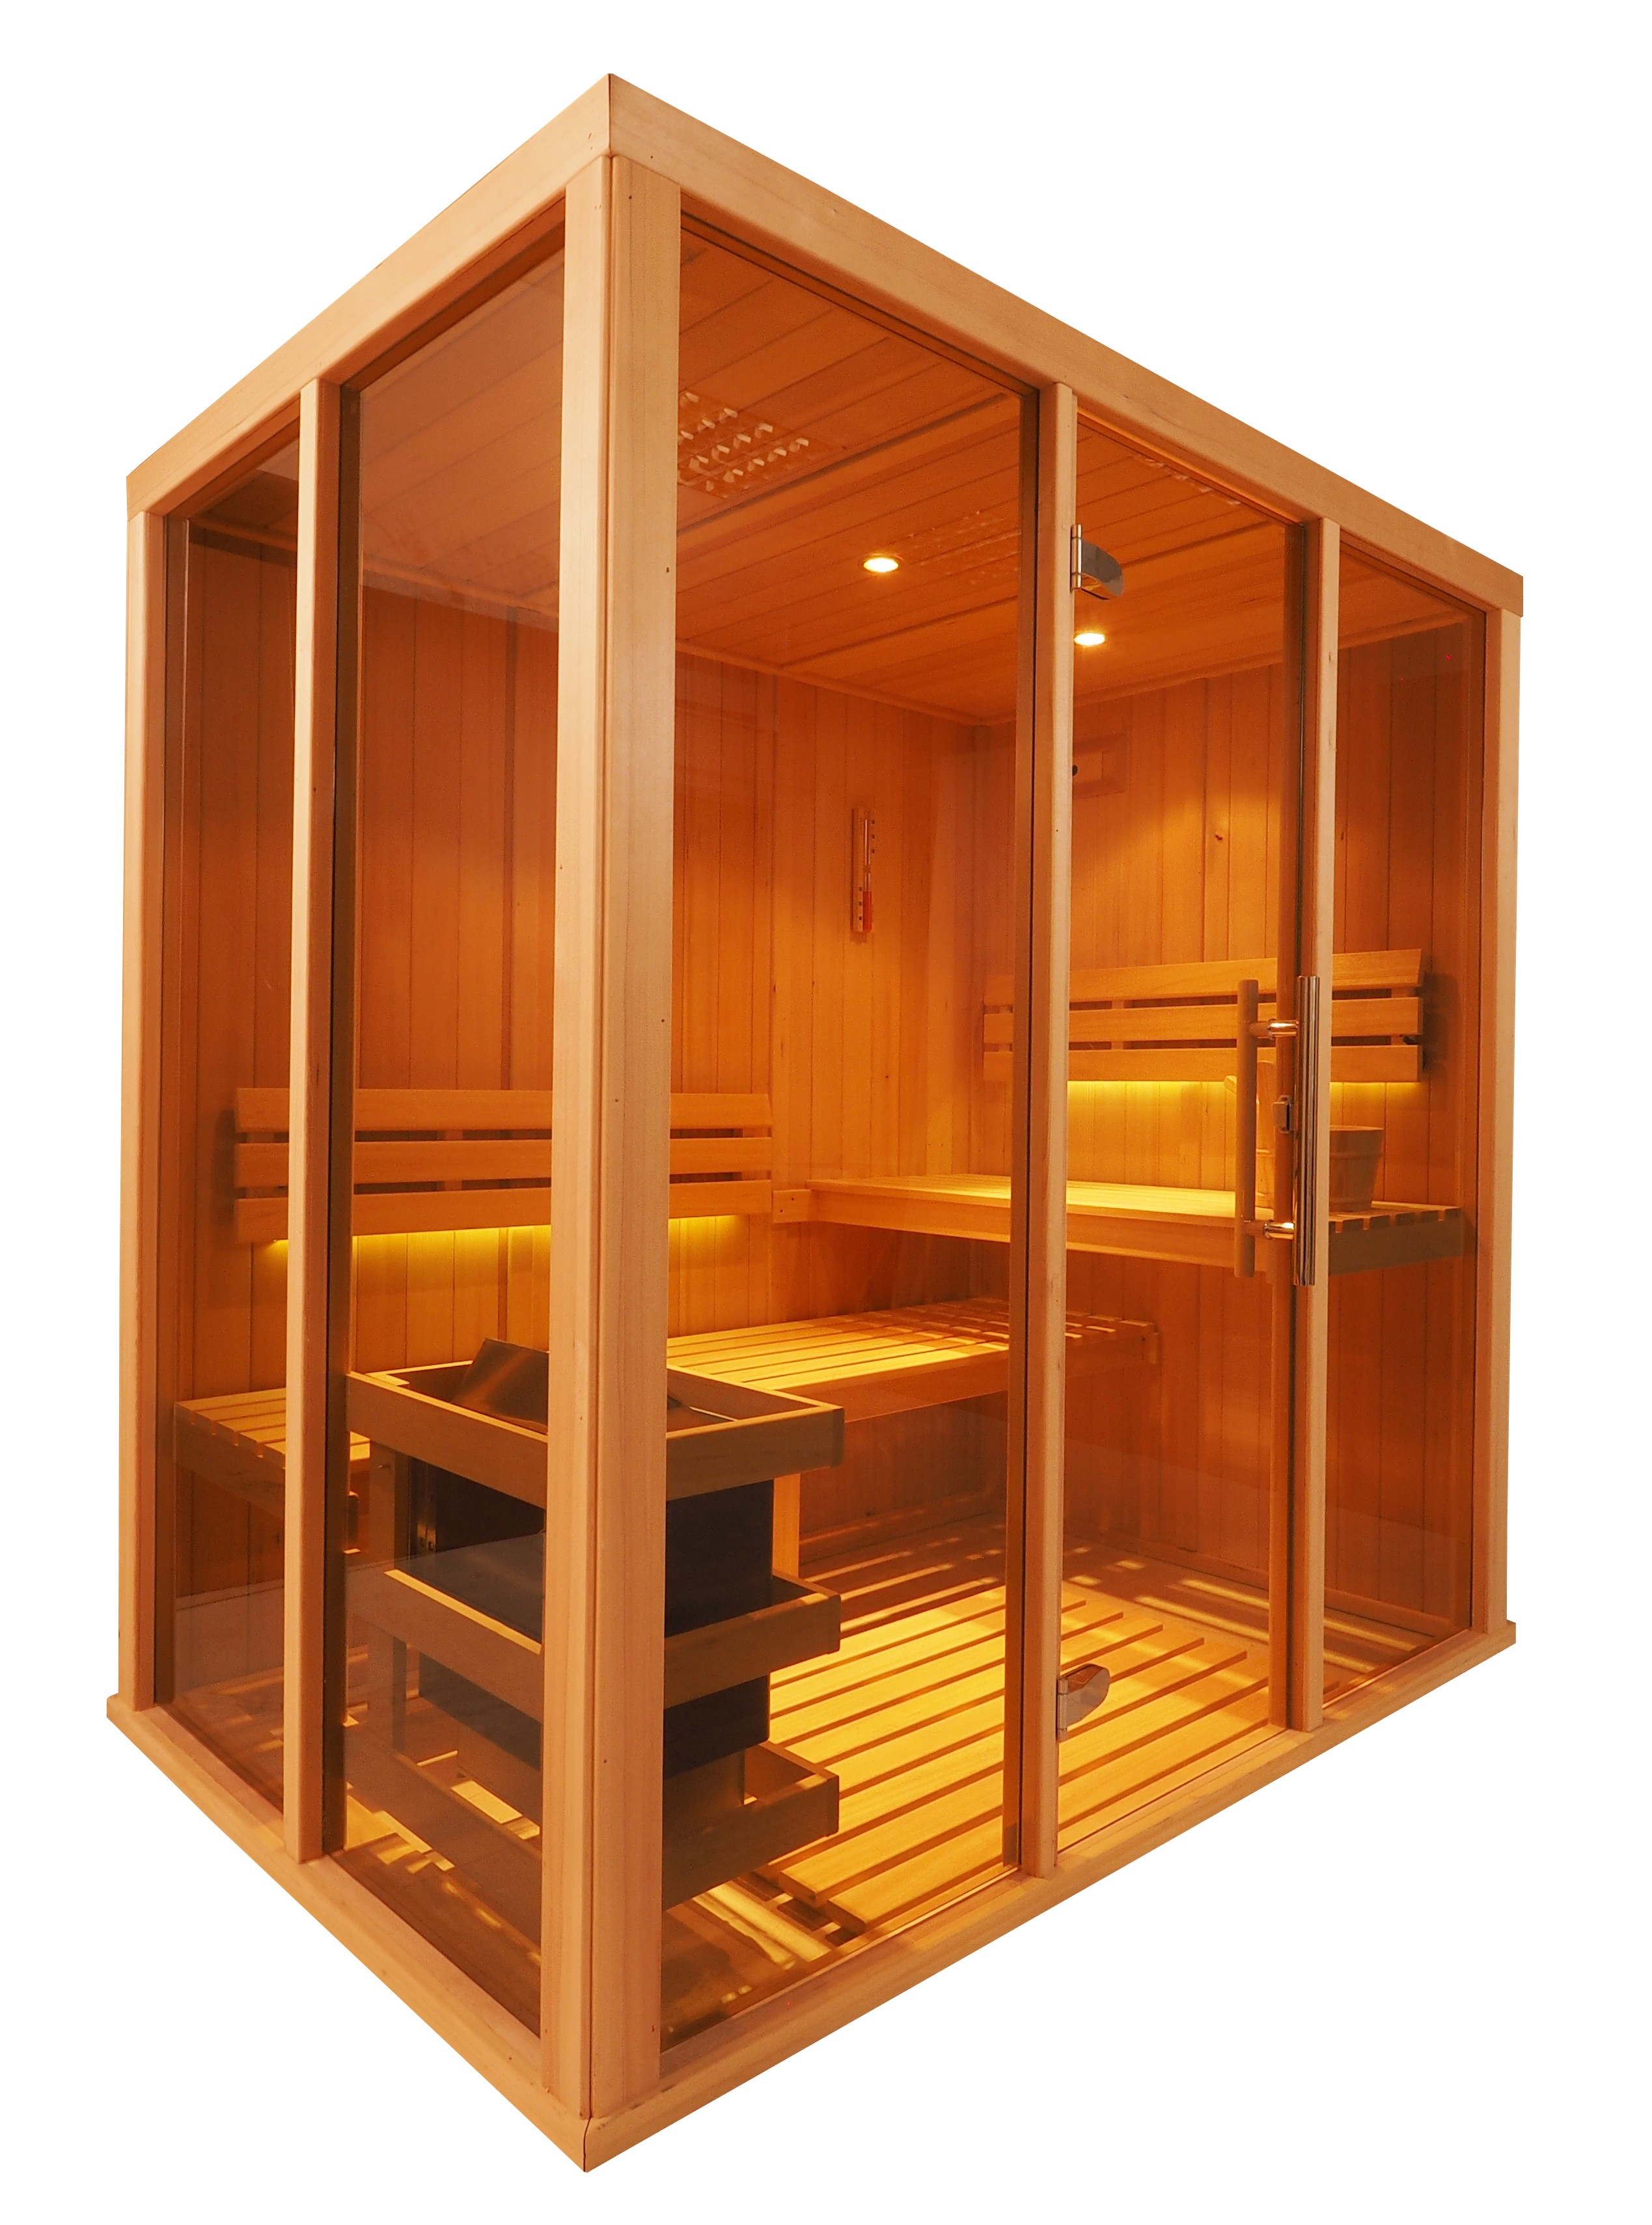 Sauna finlandesa Vision para 3 pessoas - V2030